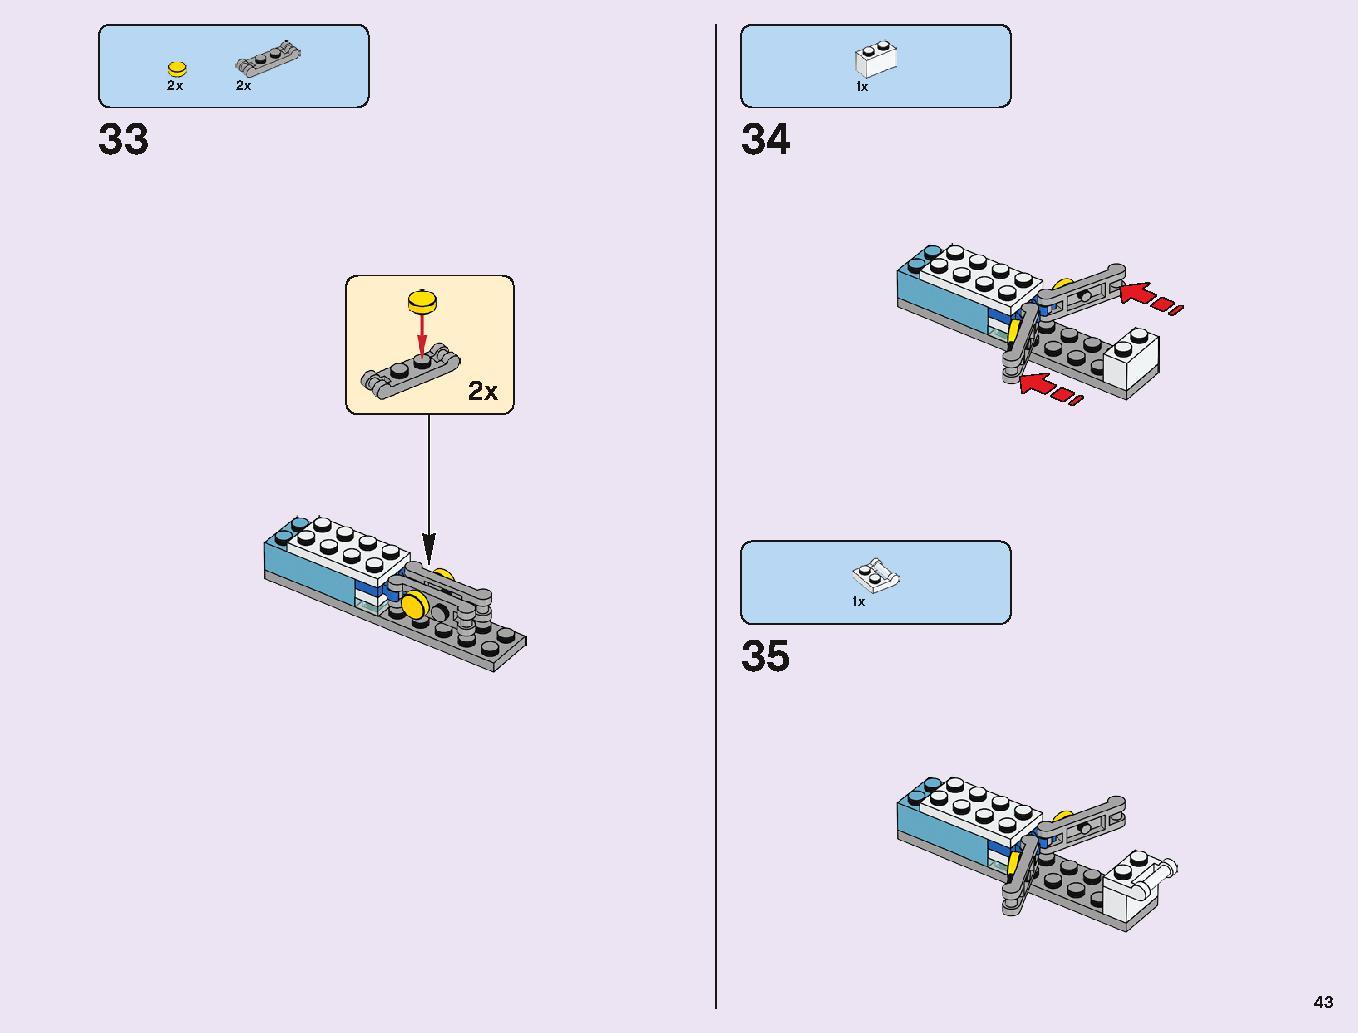 アナと雪の女王 “アイスキャッスル・ファンタジー” 43172 レゴの商品情報 レゴの説明書・組立方法 43 page